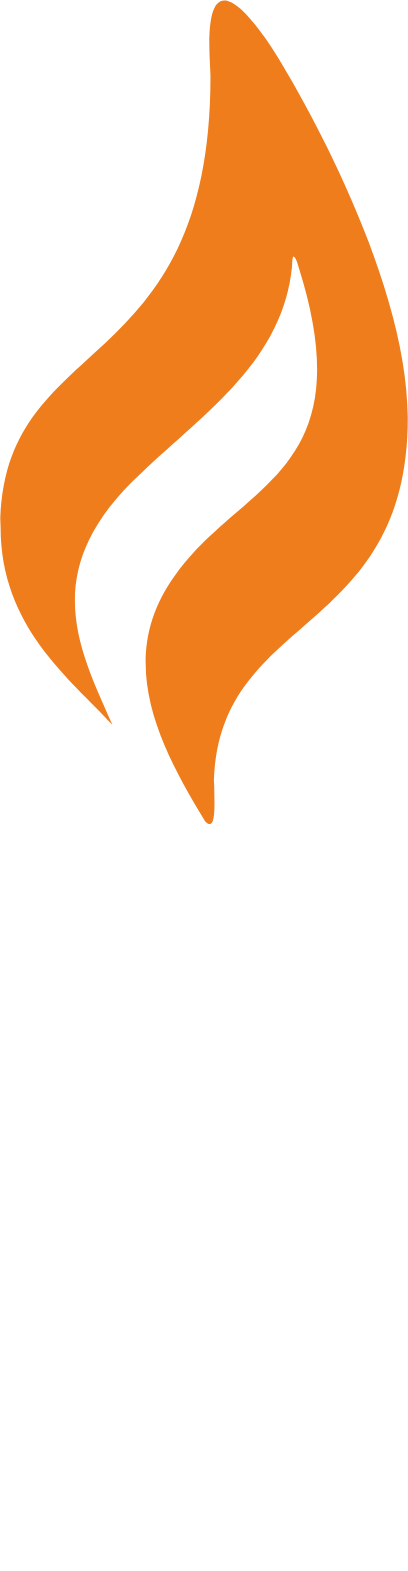 Ringkjøbing Landbobank logo pour fonds sombres (PNG transparent)